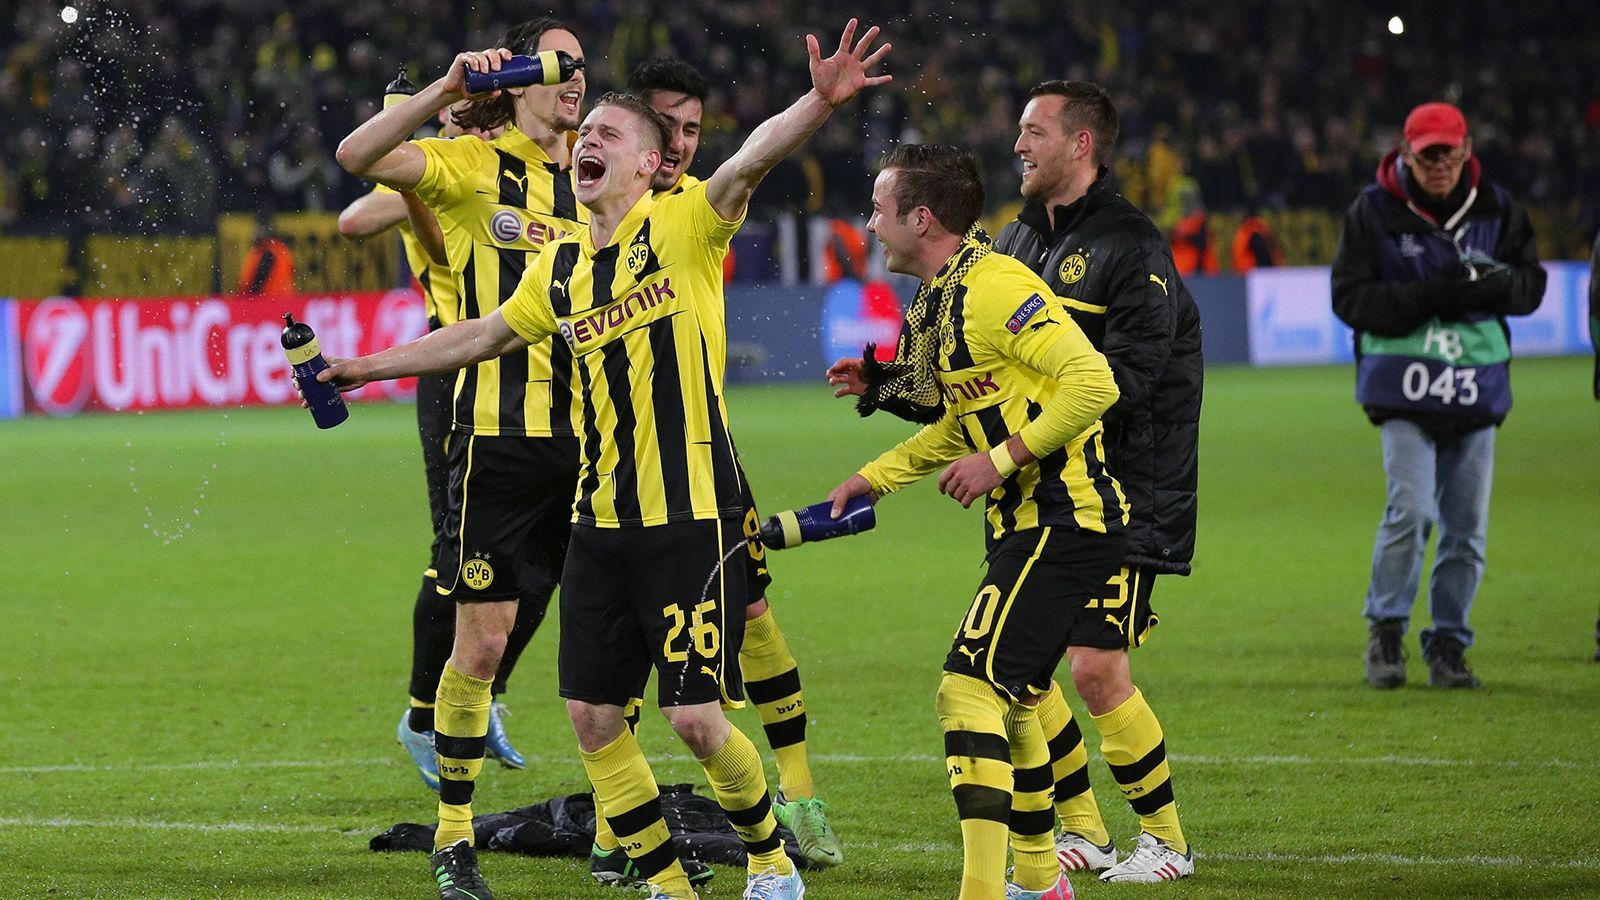 
                <strong>9. April 2013: Das Wunder von Dortmund</strong><br>
                In der Champions League dreht der BVB in dieser Saison mächtig auf und zieht sogar ins Finale ein. Das legendäre 3:2 gegen Malaga in der letzten Sekunde zum Einzug ins Halbfinale ist bis heute unvergessen und wohl einer der unfassbarsten Momente in der Karriere von Piszczek. Es folgte ein 4:1-Hinspielsieg gegen Real Madrid und der Einzug ins Finale. Doch dazwischen warteten andere Aufgaben.
              